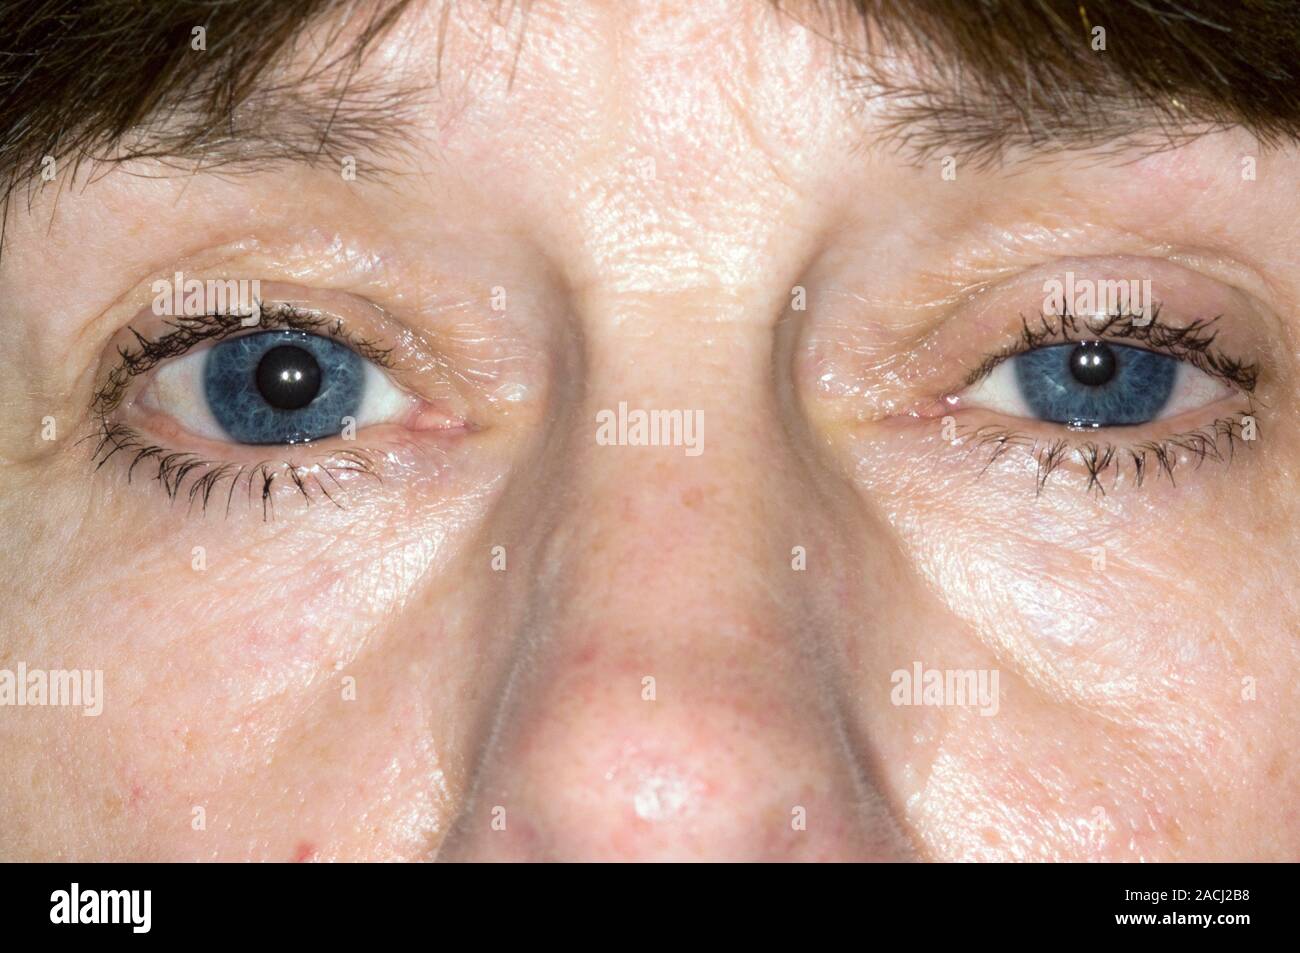 Hängenden Augenlid (Ptosis, linke Auge, rechts) und verengte Pupille des  Auges in eine 63 Jahre alte Patientin mit Horner-syndrom. Horner Syndrom  Stockfotografie - Alamy